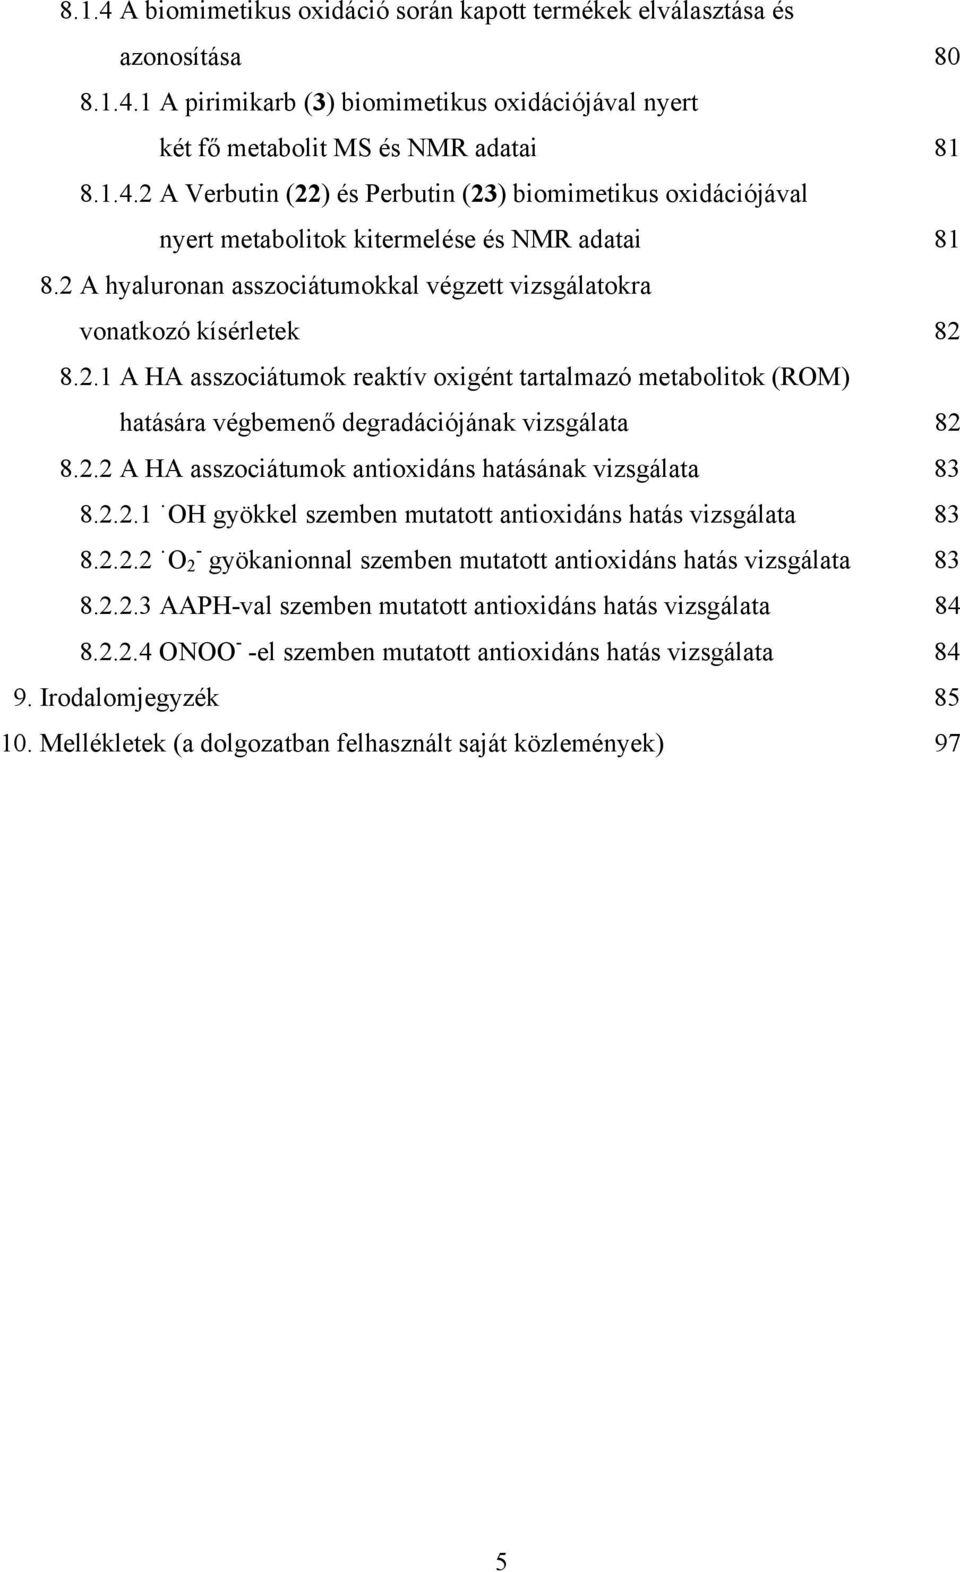 2.2.1 gyökkel szemben mutatott antioxidáns hatás vizsgálata 83 8.2.2.2-2 gyökanionnal szemben mutatott antioxidáns hatás vizsgálata 83 8.2.2.3 AAP-val szemben mutatott antioxidáns hatás vizsgálata 84 8.